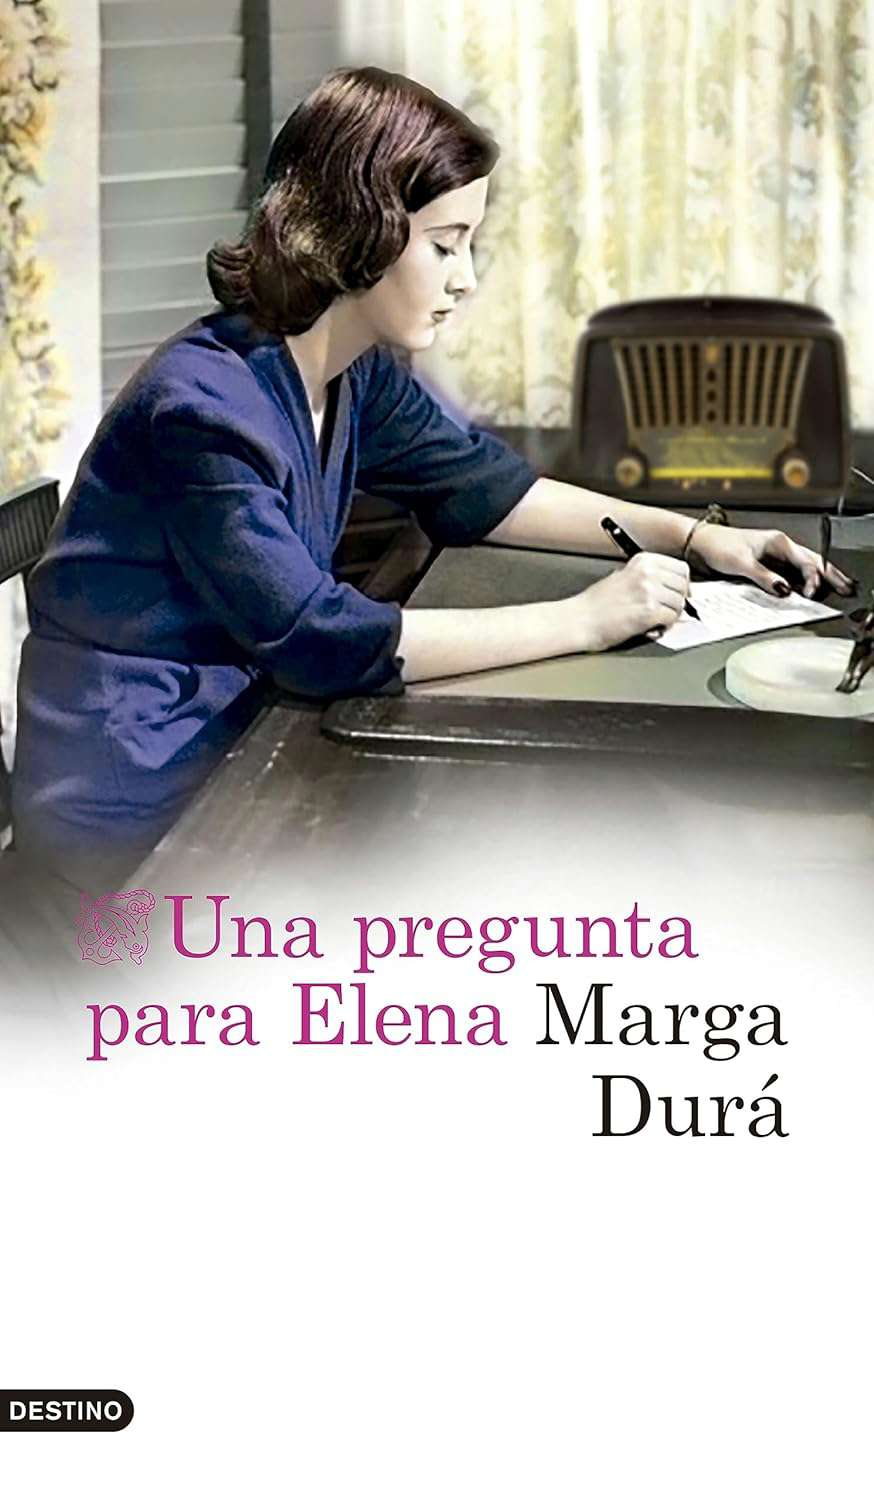 Una pregunta para Elena de Marga Durá